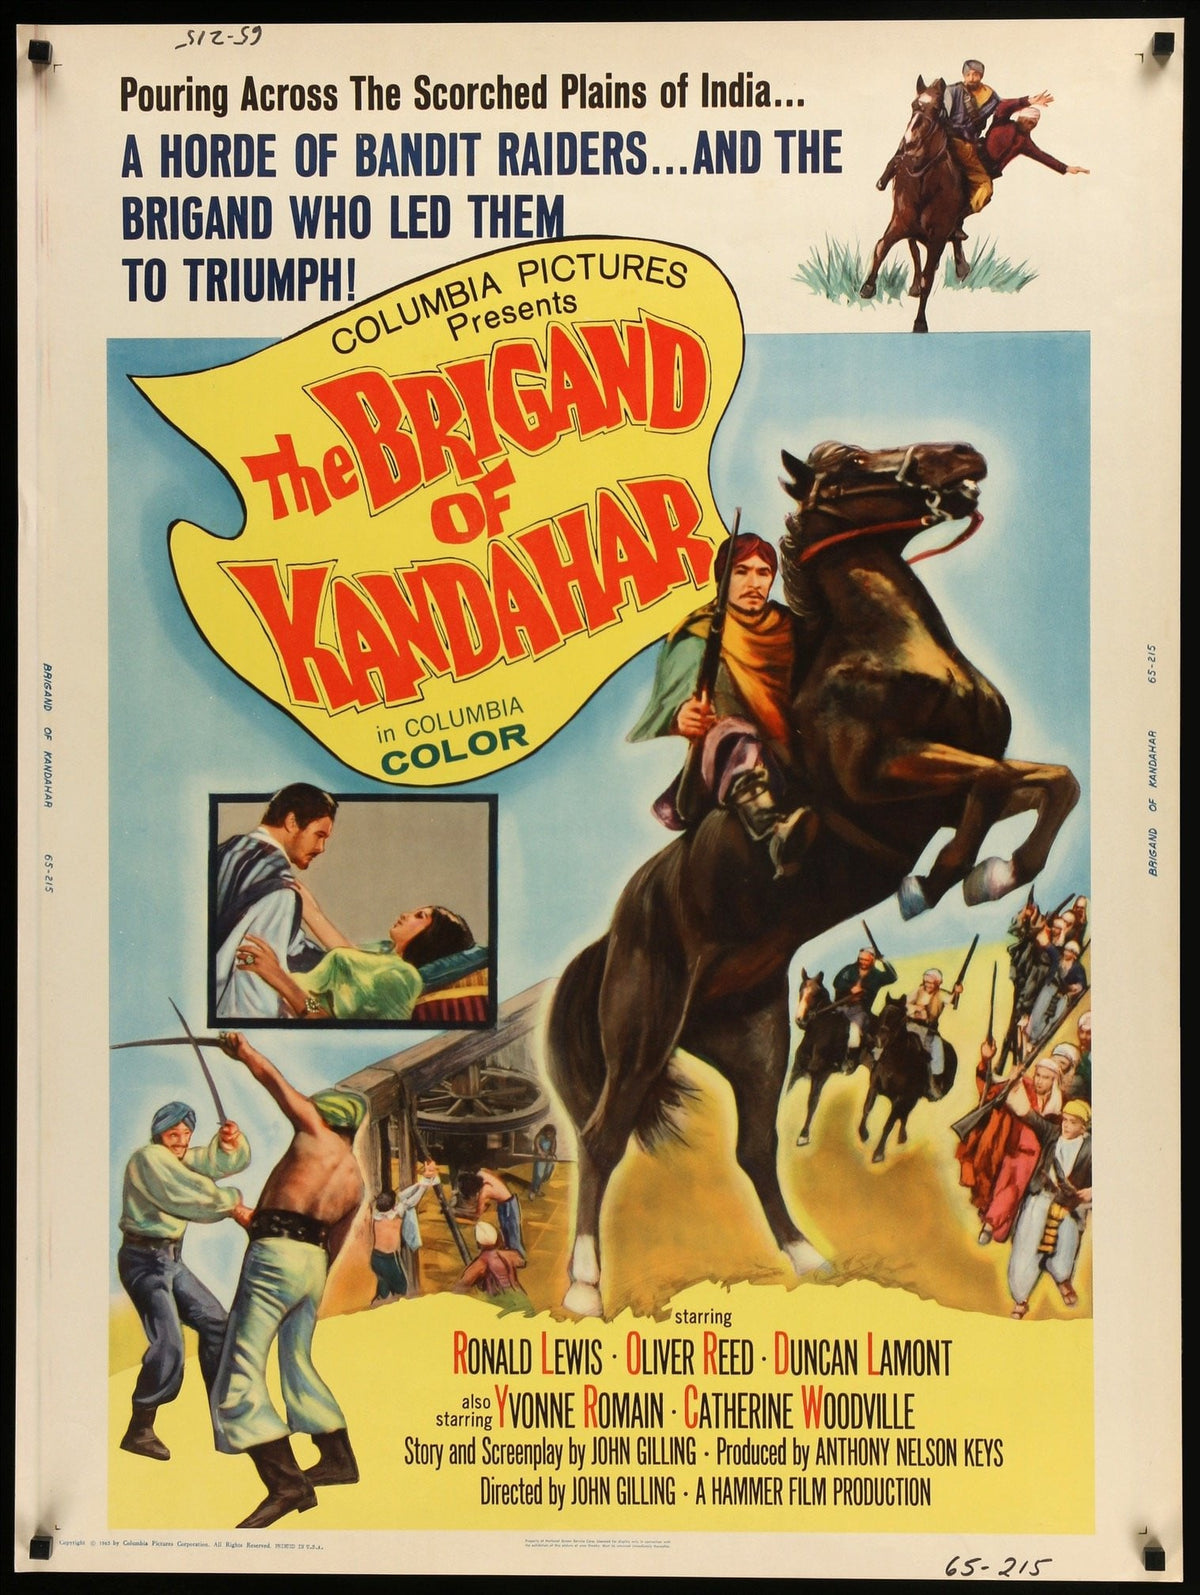 Brigand of Kandahar (1965) original movie poster for sale at Original Film Art